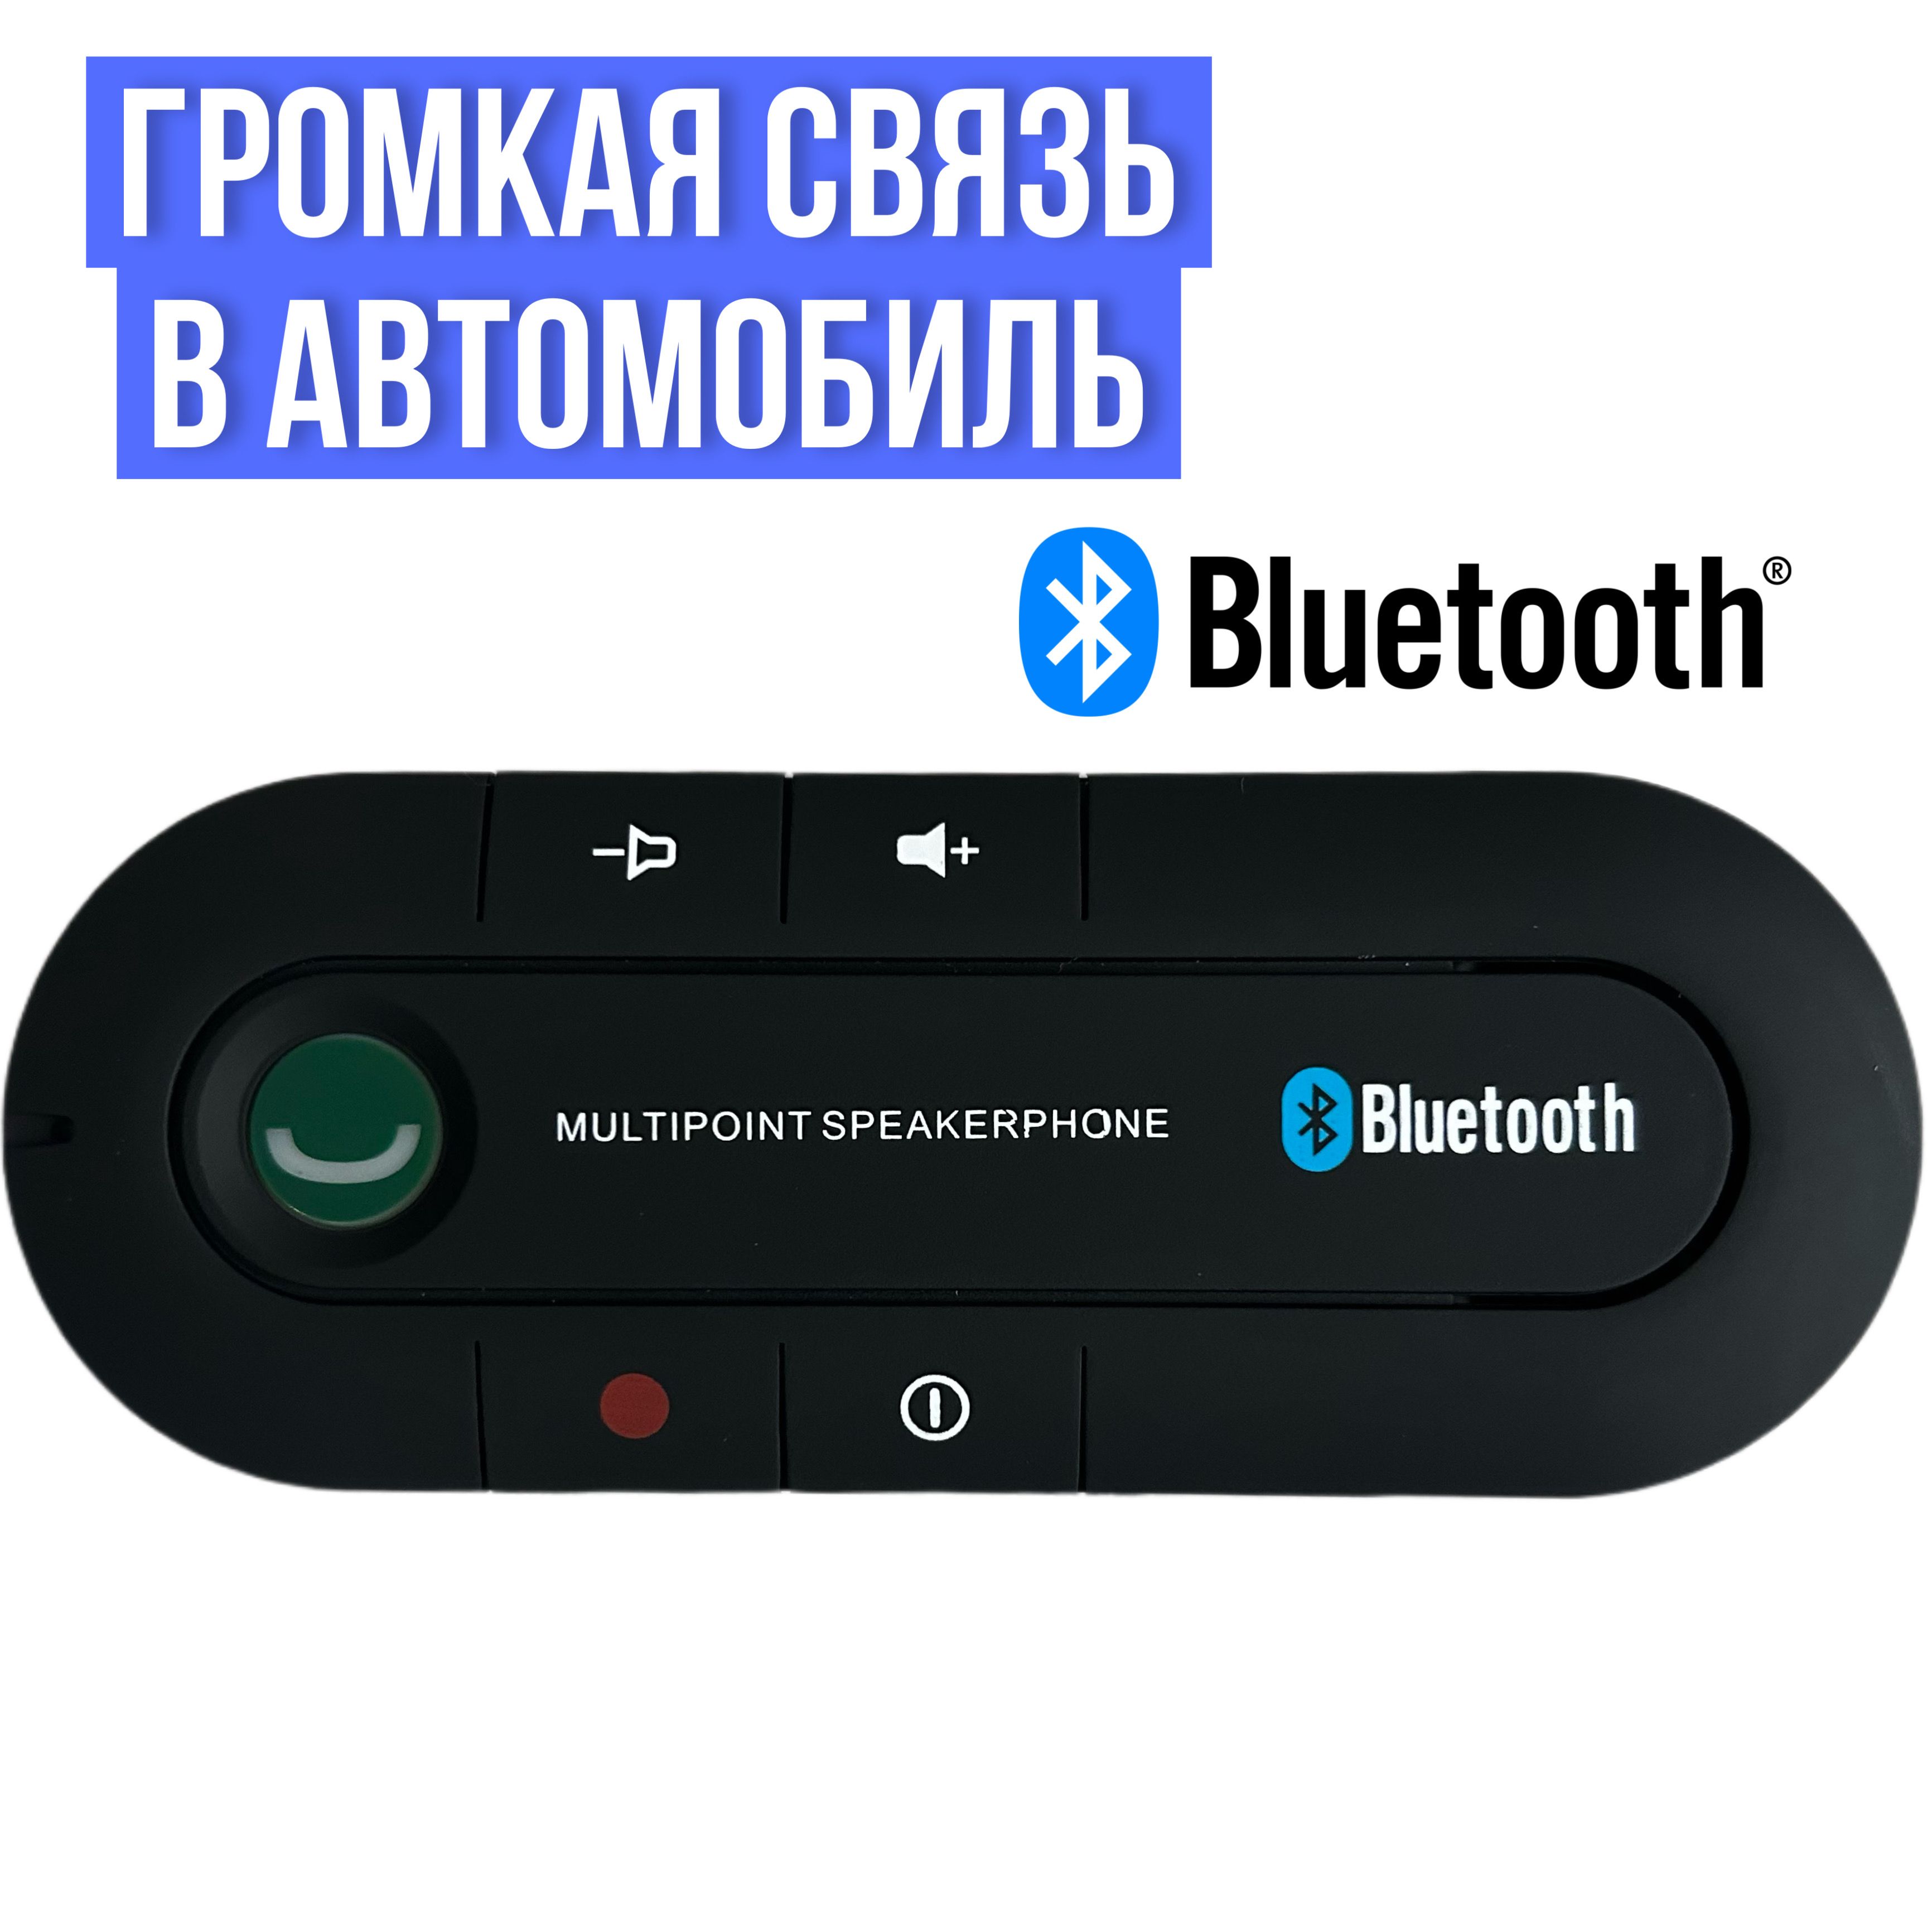 Громкая связь для авто - купить в интернет-магазине manikyrsha.ru с доставкой по Украине